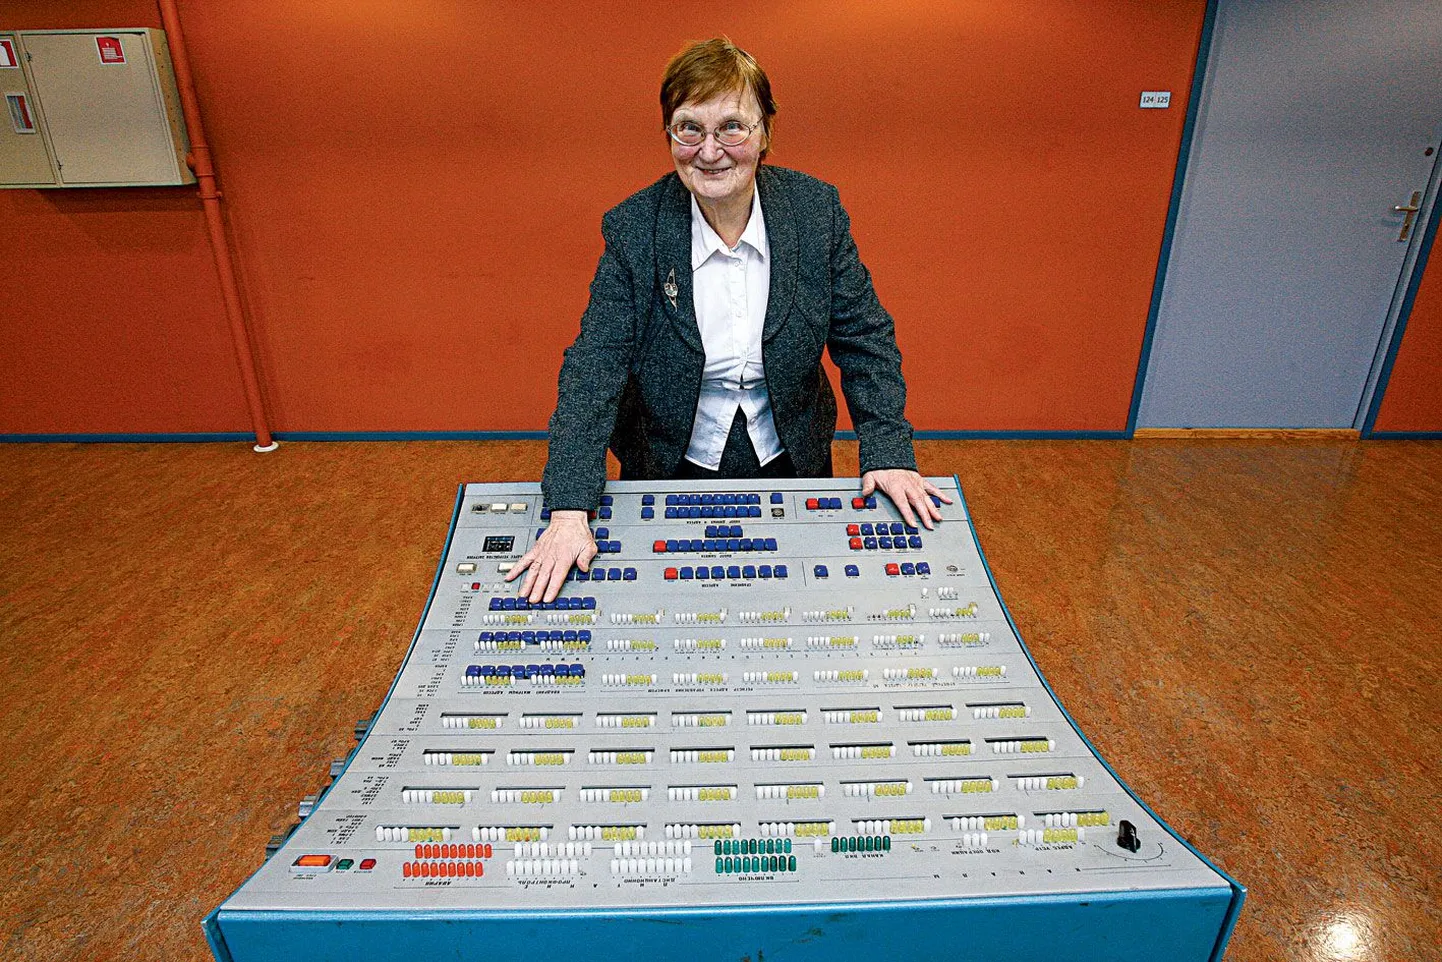 Käimasoleva rahva ja eluruumide loenduse metoodikajuht emeriitprofessor Ene-Margit Tiit näitab TÜ matemaatika- ja informaatikateaduskonna muuseumis kunagist tehnikaimet (arvuti esipaneel), millega Moskvas rahvaloenduse andmeid 
töödeldi.